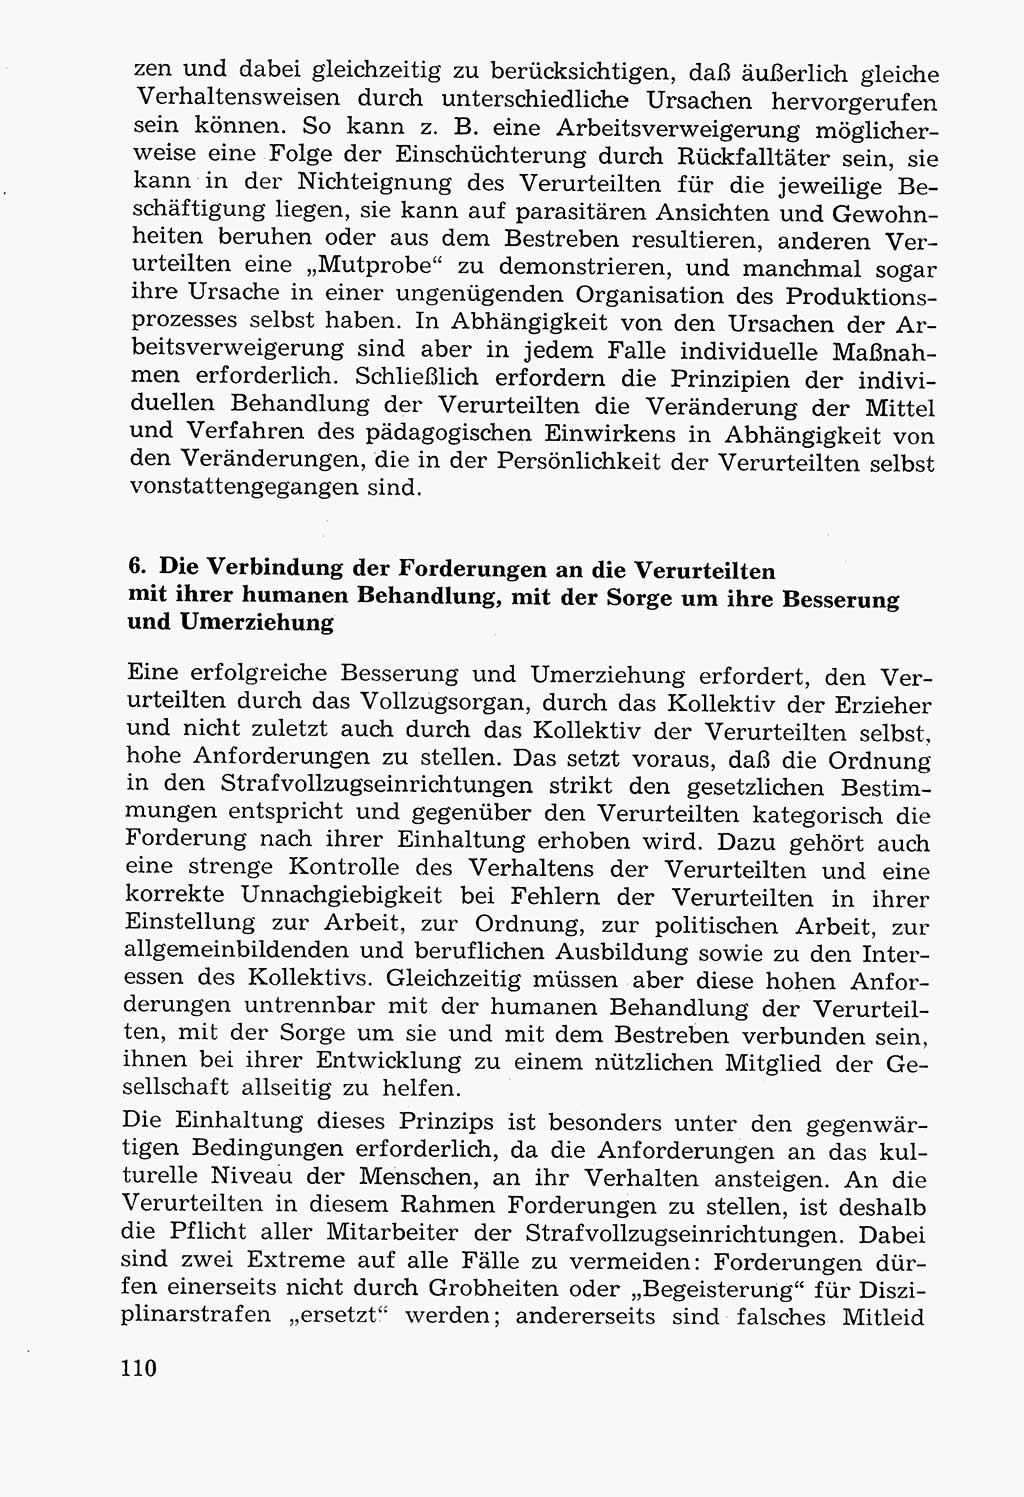 Lehrbuch der Strafvollzugspädagogik [Deutsche Demokratische Republik (DDR)] 1969, Seite 110 (Lb. SV-Pd. DDR 1969, S. 110)